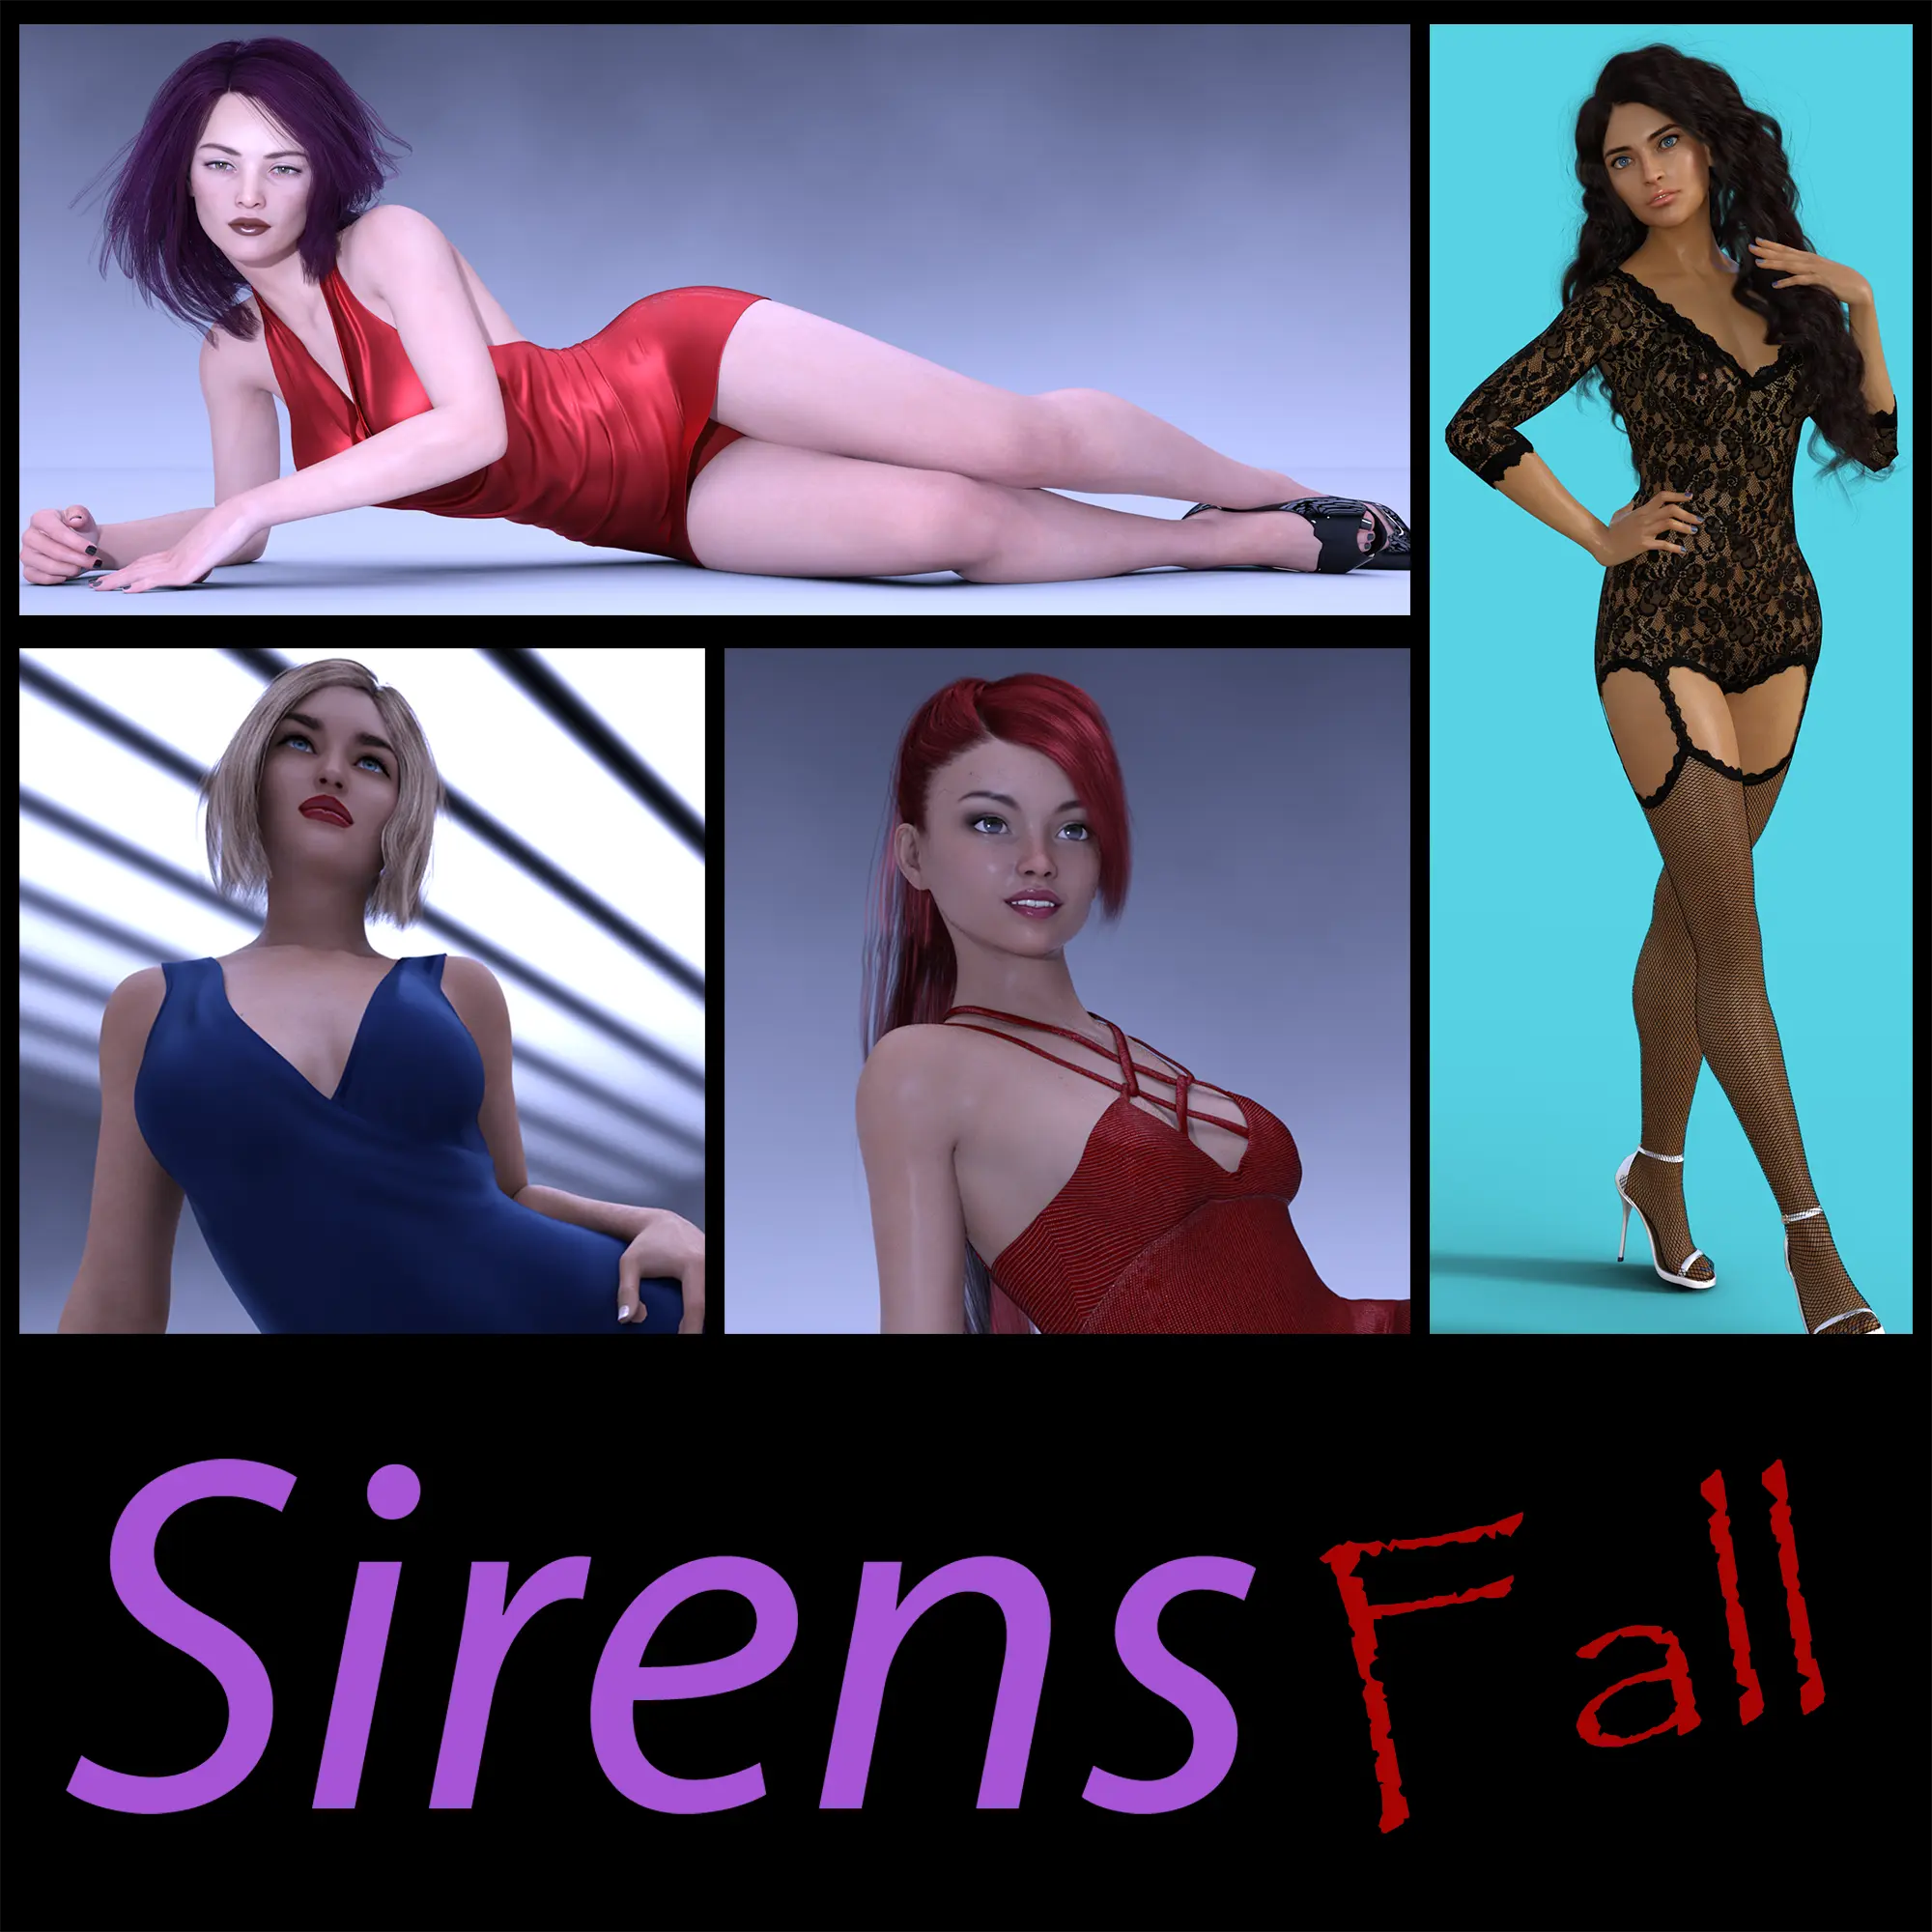 Sirens Fall [v0.01] main image